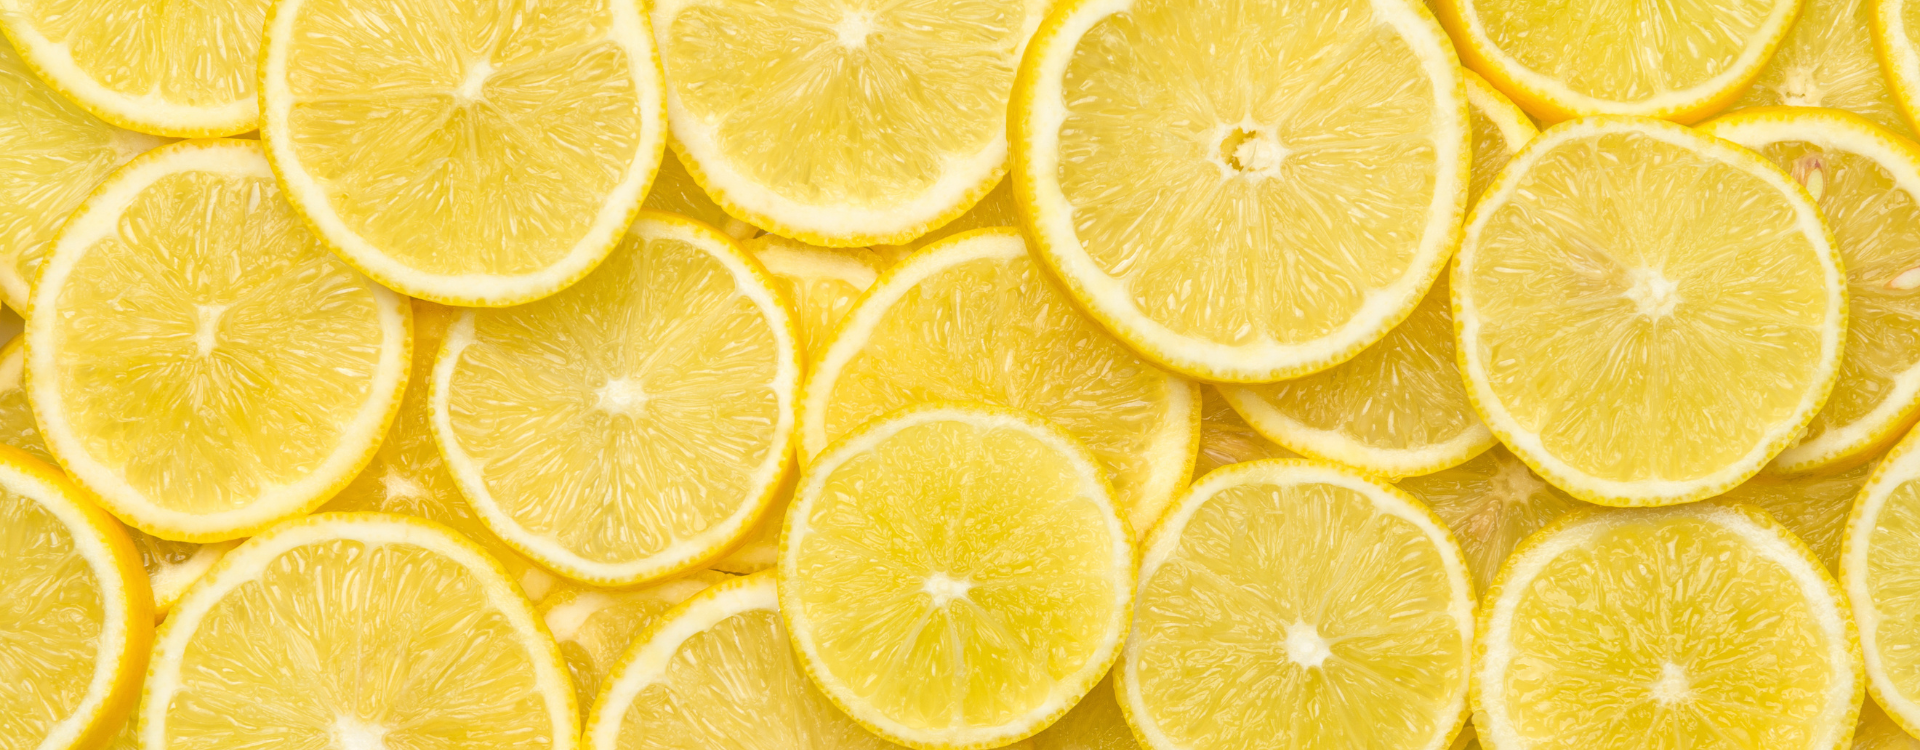 Le citron dans les desserts